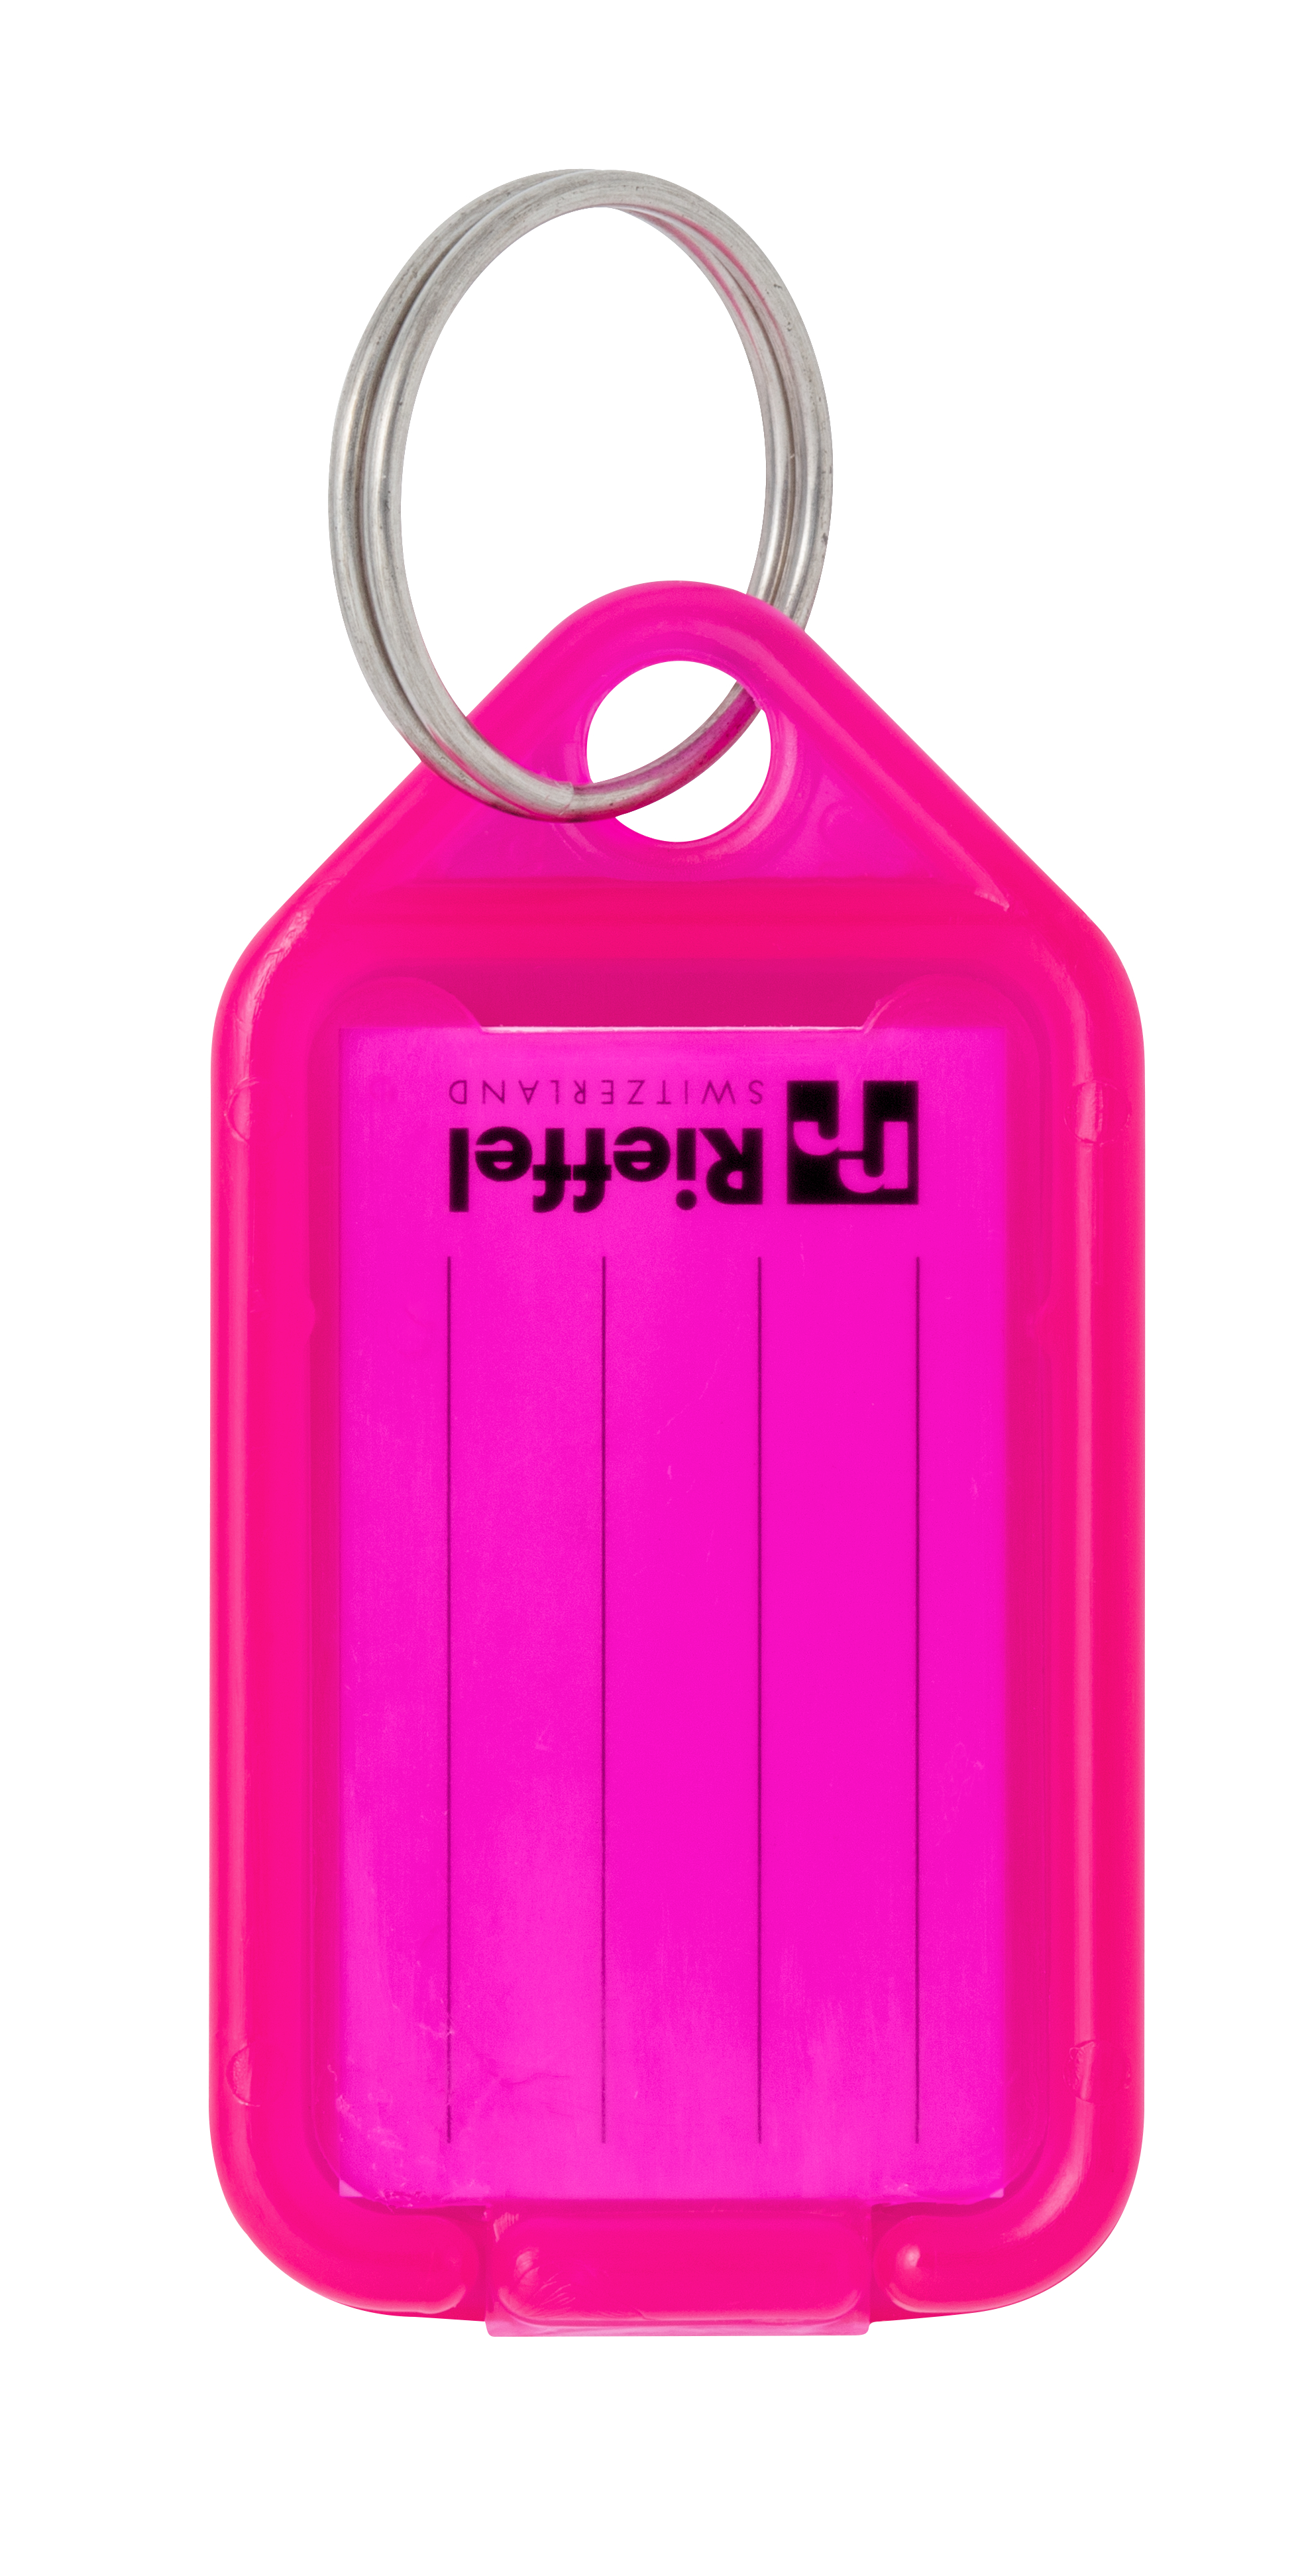 RIEFFEL SWITZERLAND Etiquettes clé 38x22mm KT 1000 NEON PINK neon pink 100 pcs.